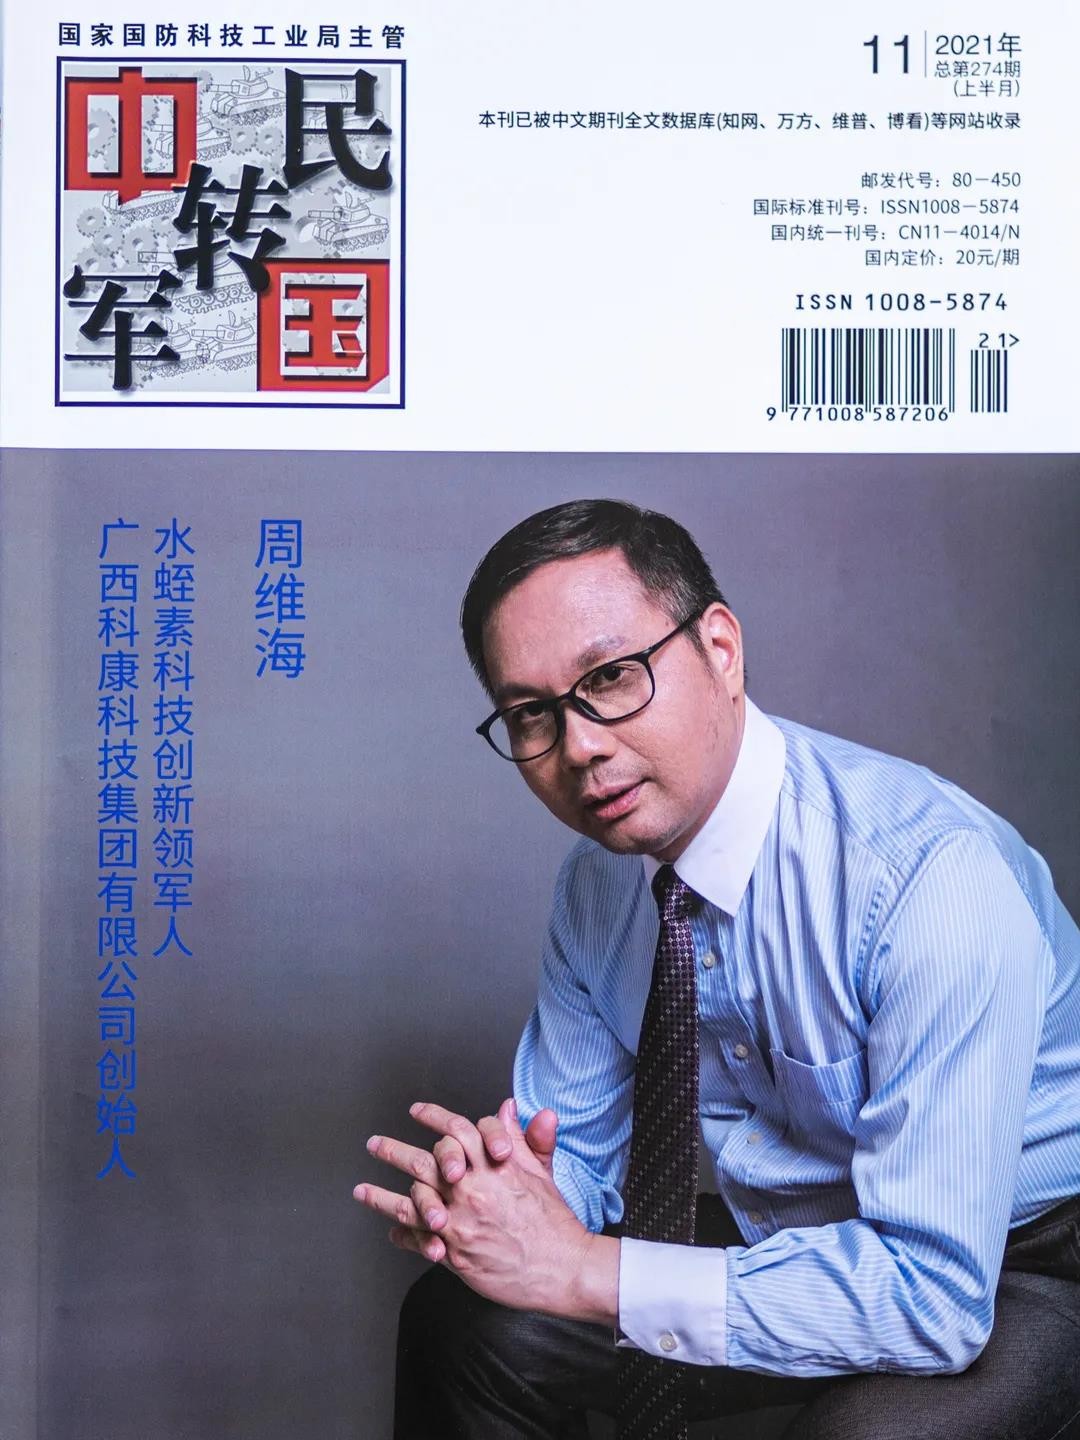 科康集团董事长周维海荣登《中国军转民》杂志封面人物 被誉为中国天然水蛭素之父